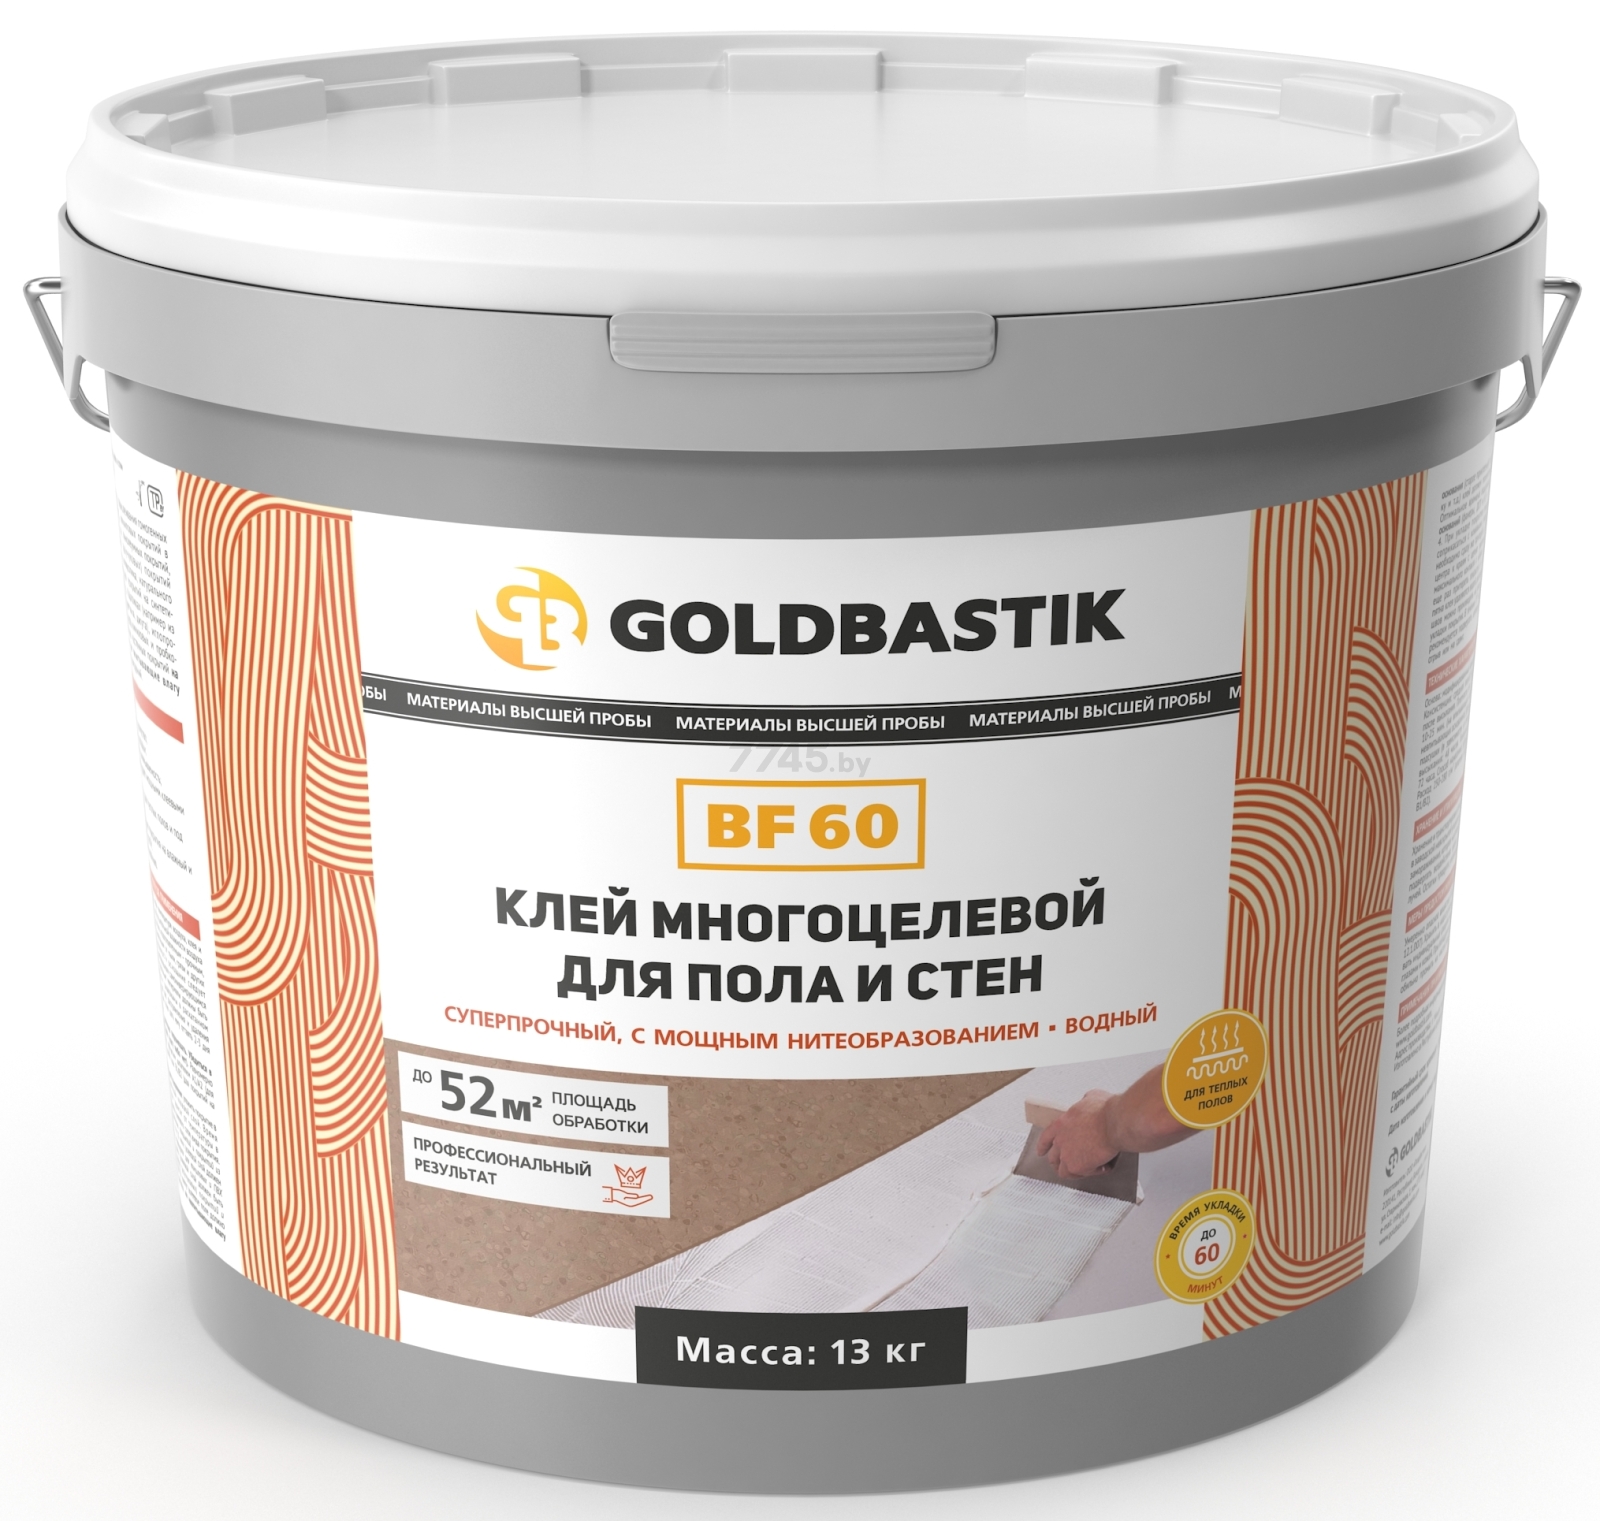 Клей многоцелевой GOLDBASTIK 13 кг (BF 60)